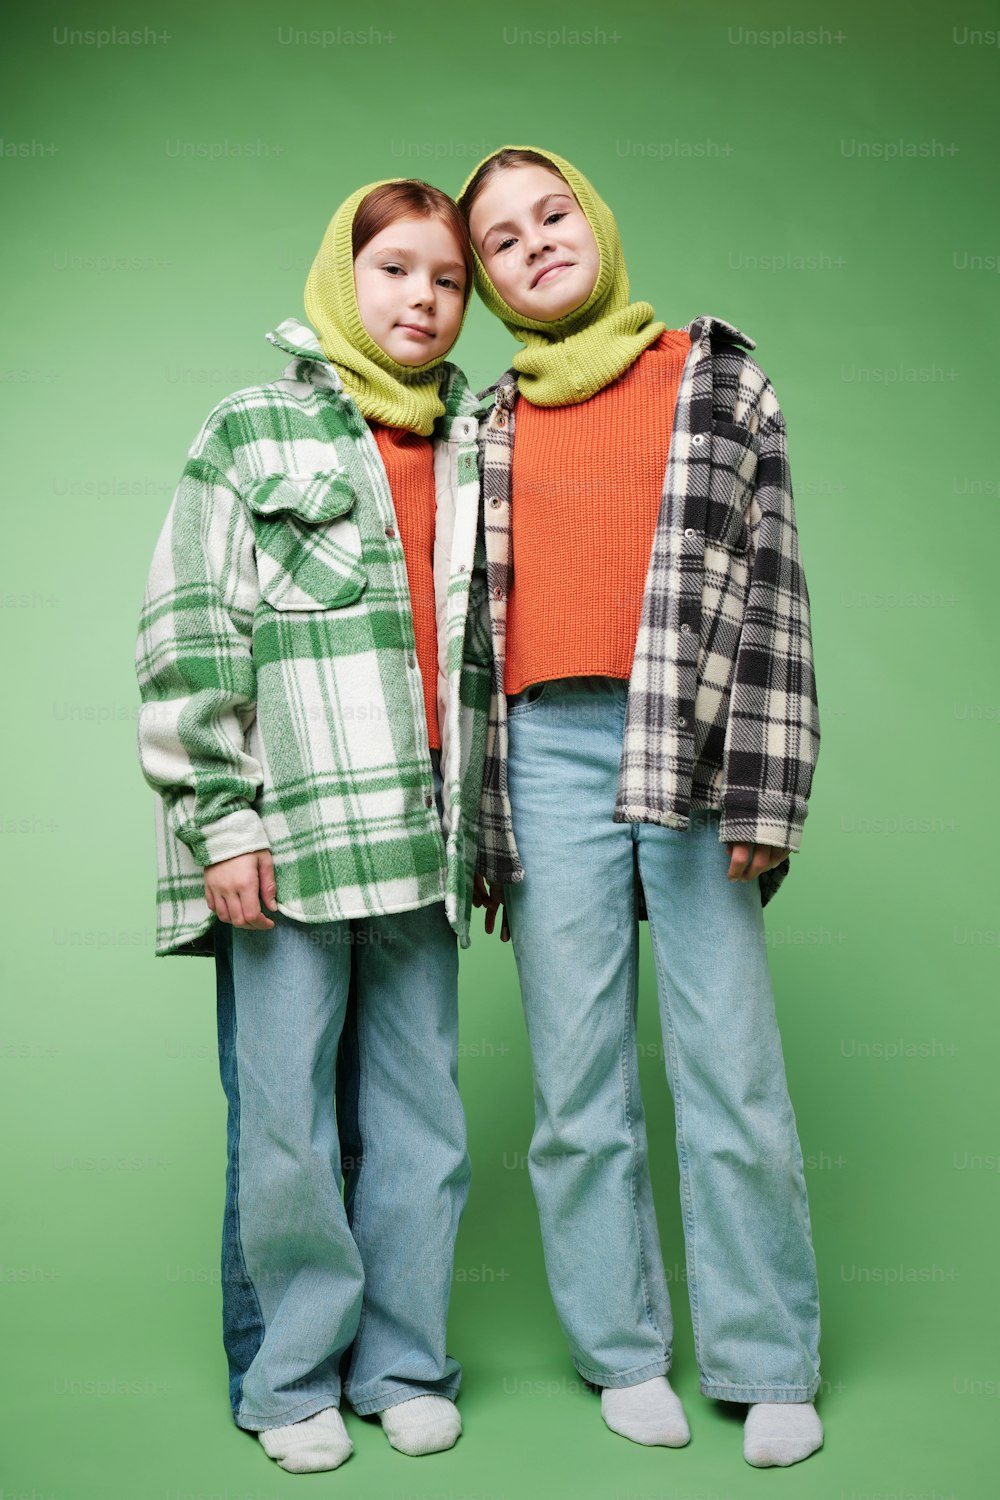 zwei Personen, die nebeneinander vor grünem Hintergrund stehen